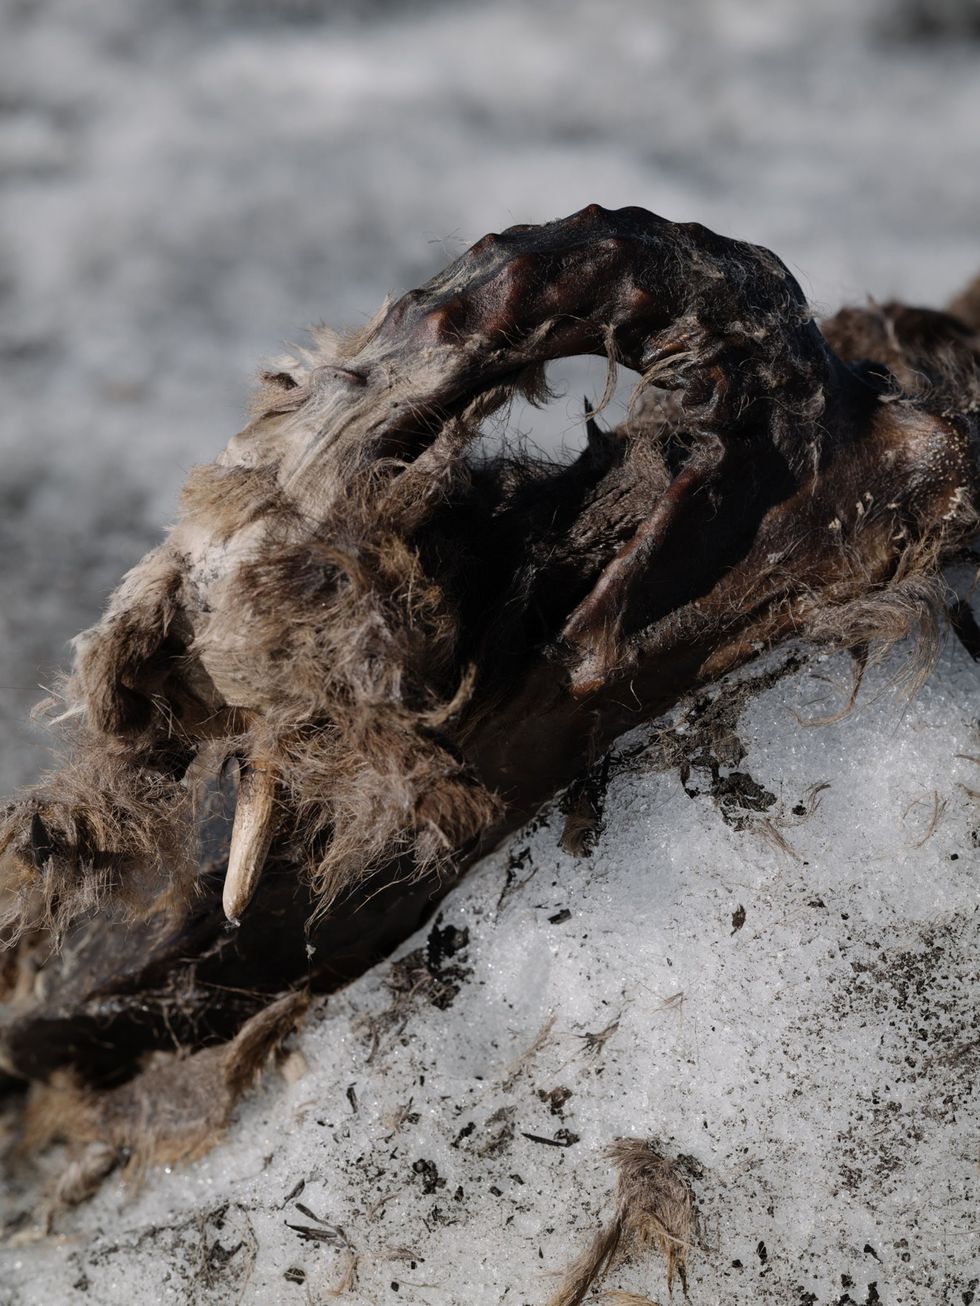 Een closeup van de hals van de gems Fischer heeft ook de plukjes haar die over het ijs lagen verspreid meegenomen